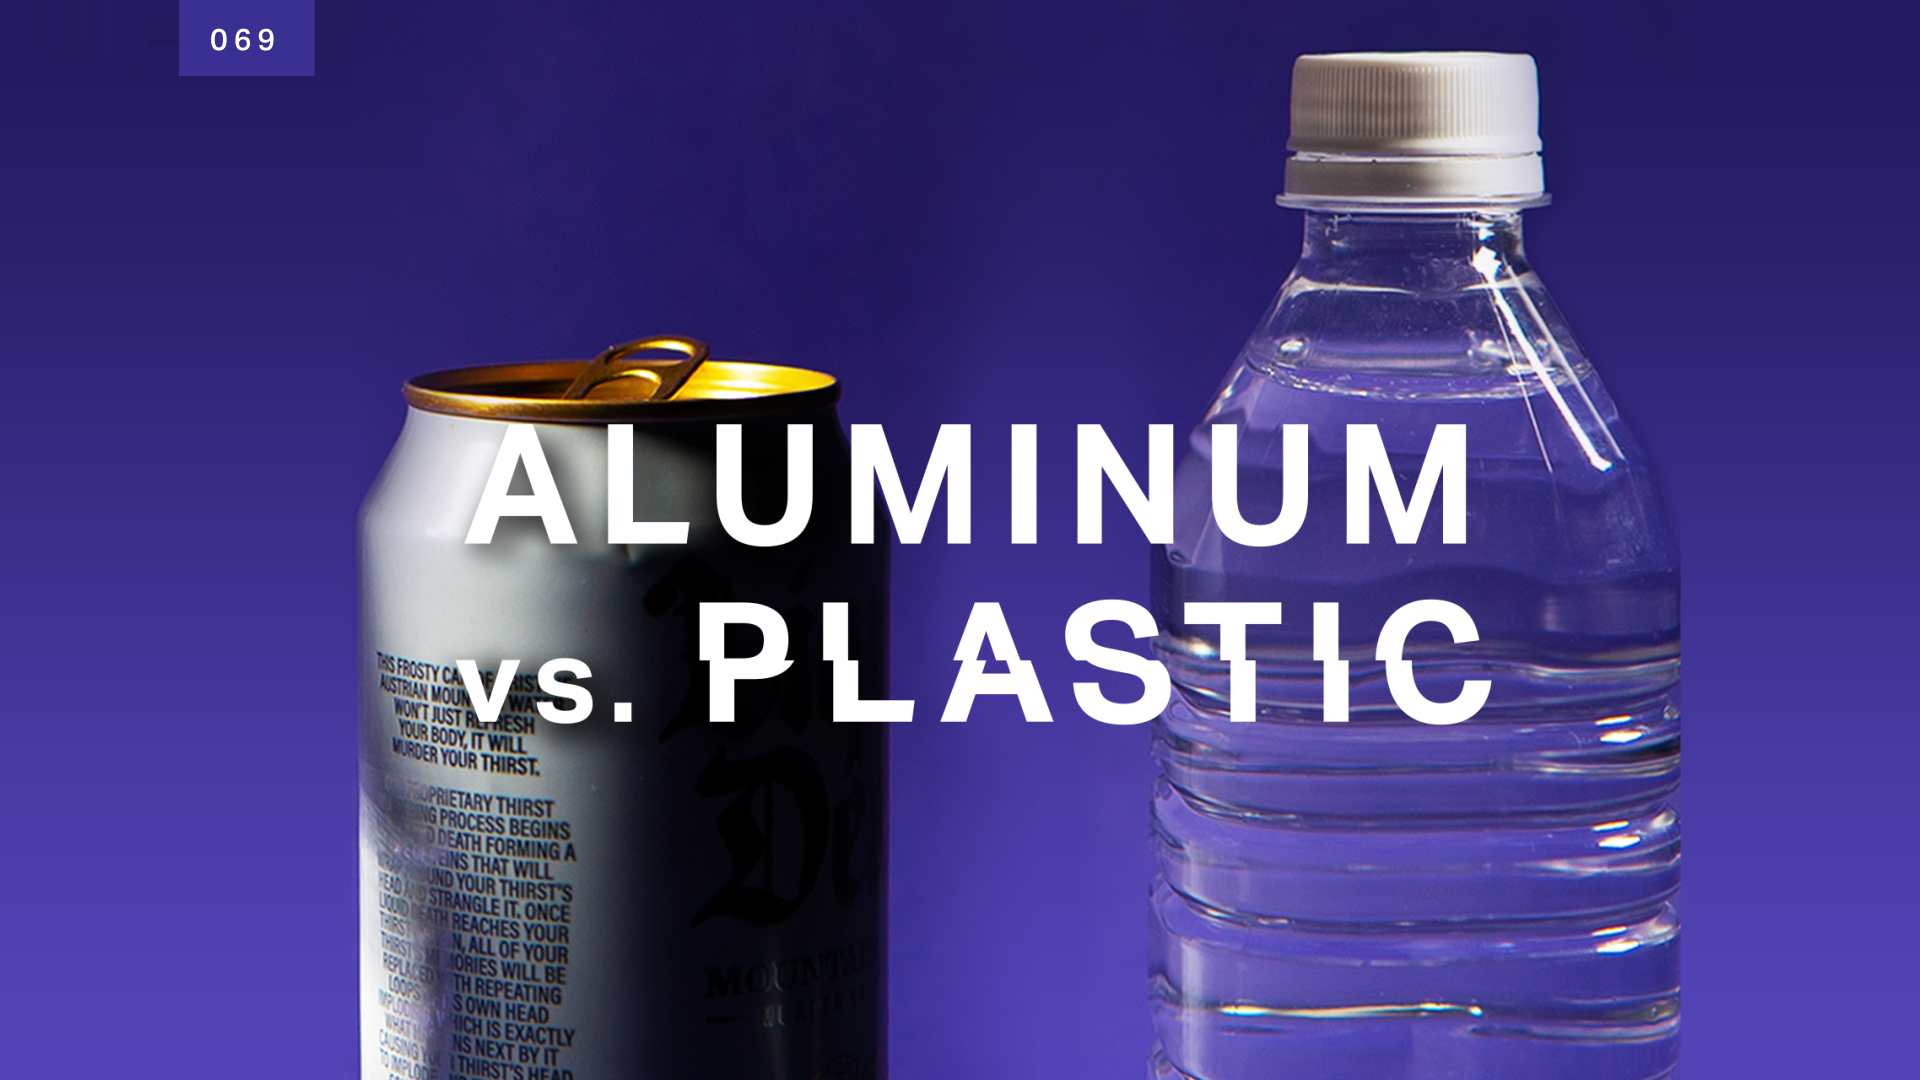 Transformers Aluminum Premium Water Bottle